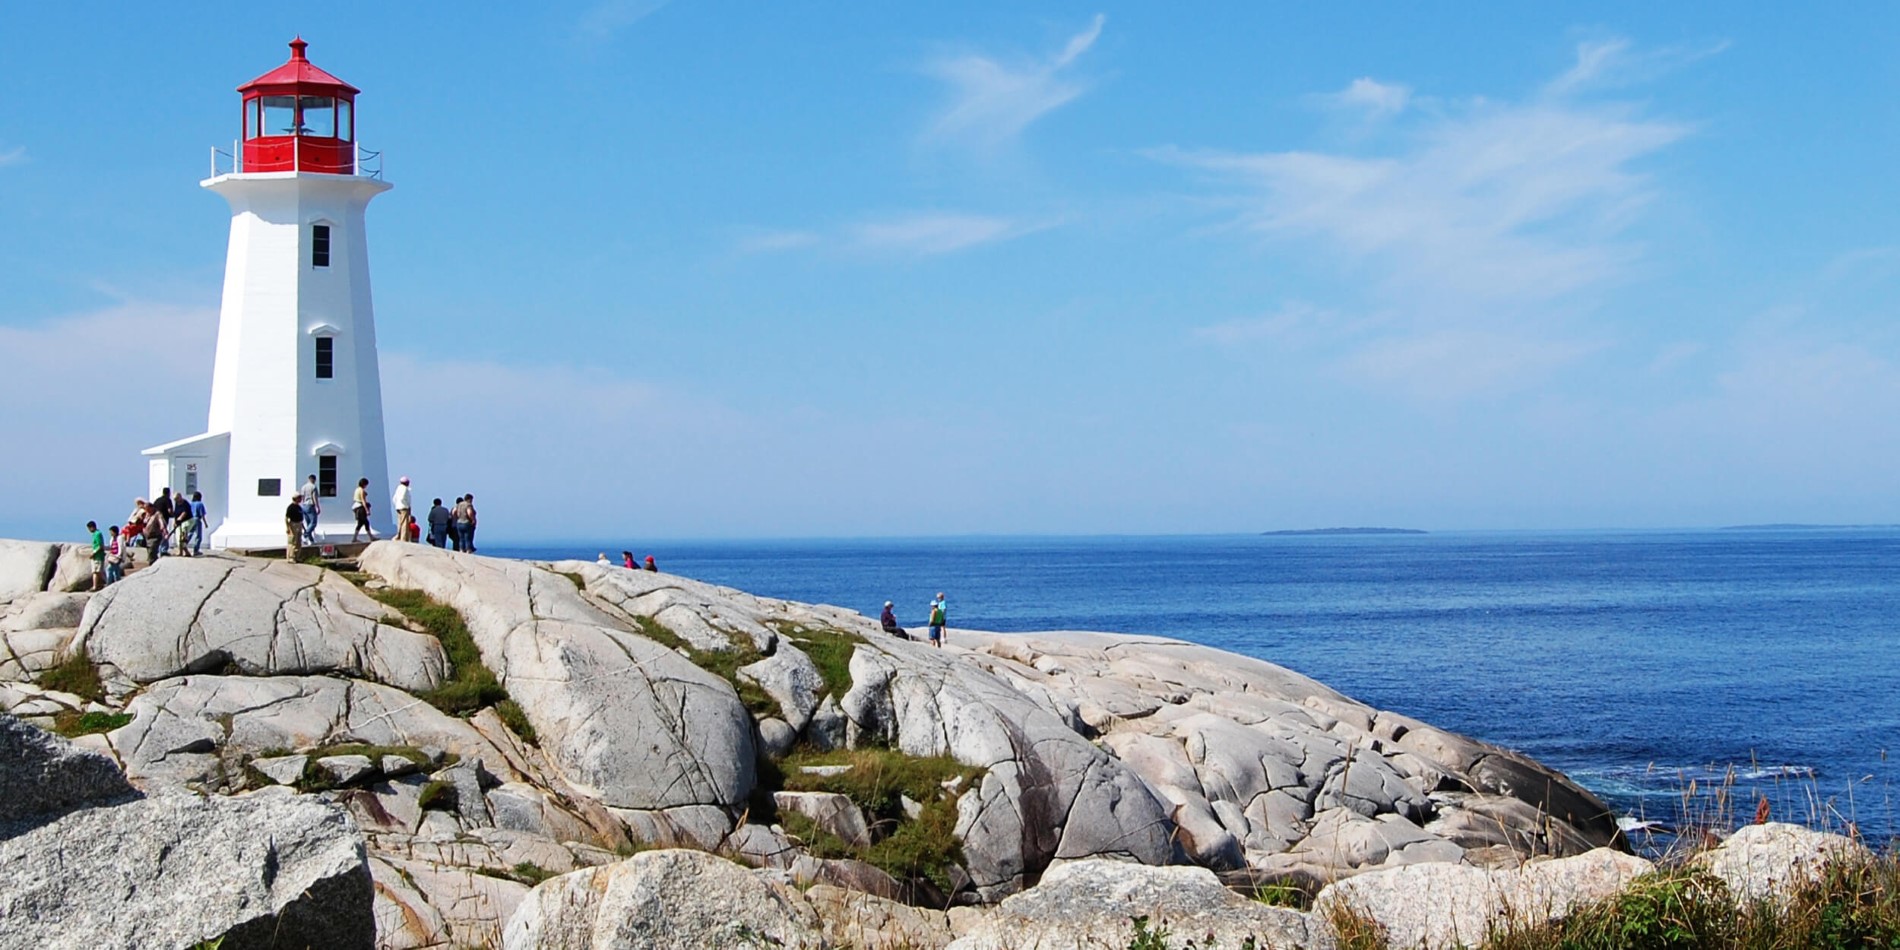 Une statue d'une personne s'asseyant sur un rocher près de l'océan